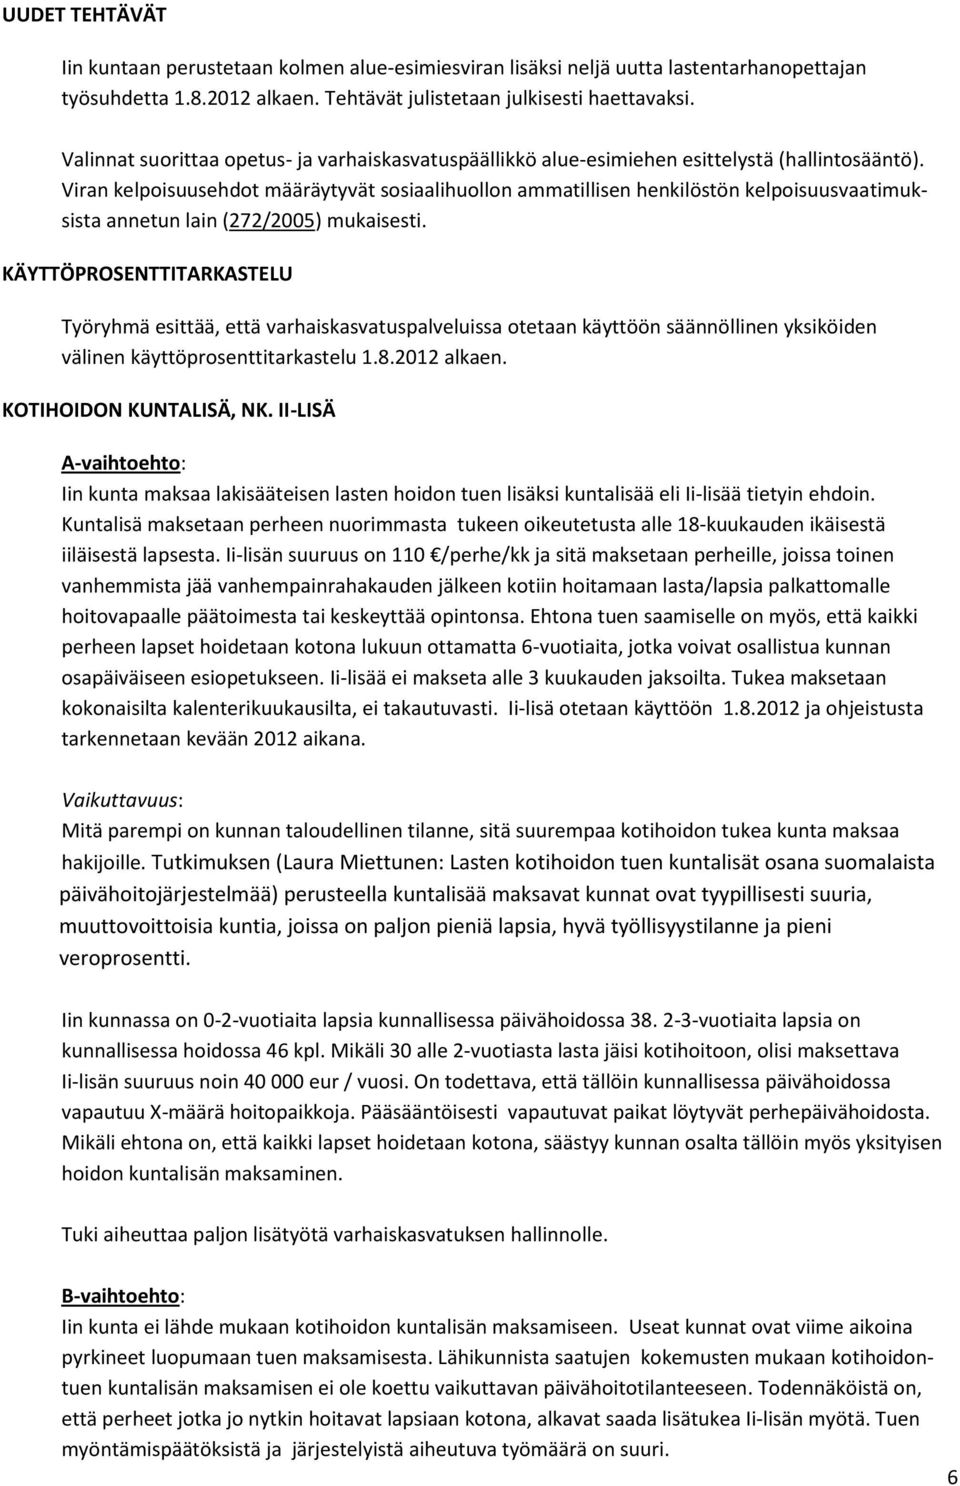 Viran kelpoisuusehdot määräytyvät sosiaalihuollon ammatillisen henkilöstön kelpoisuusvaatimuksista annetun lain (272/2005) mukaisesti.